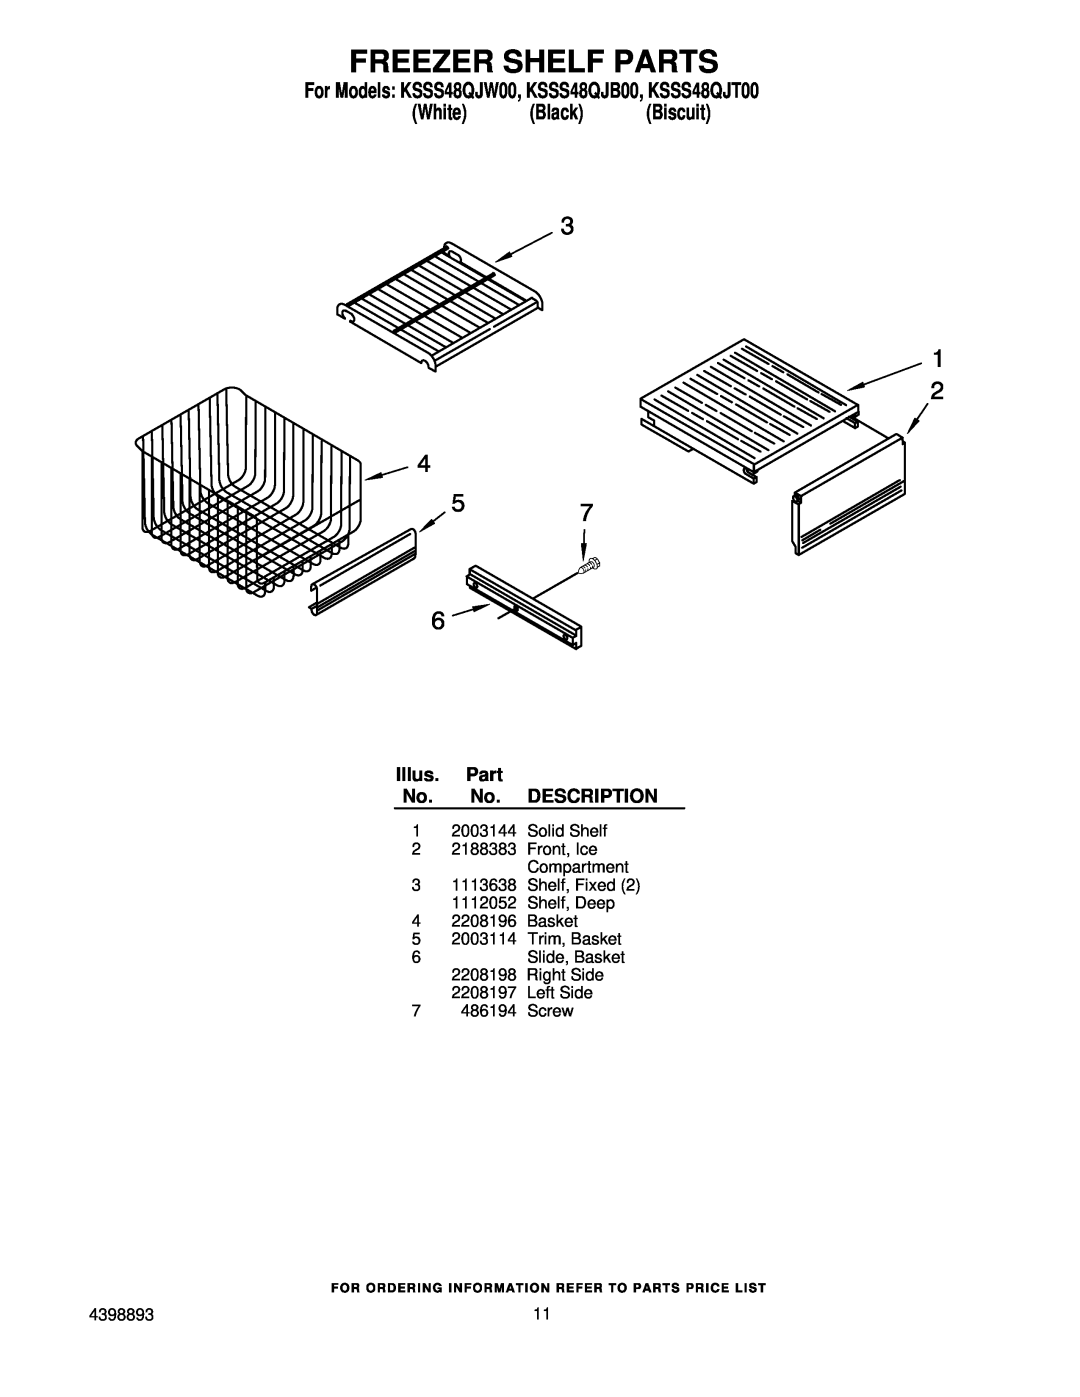 KitchenAid manual Freezer Shelf Parts, For Models KSSS48QJW00, KSSS48QJB00, KSSS48QJT00 White Black Biscuit 